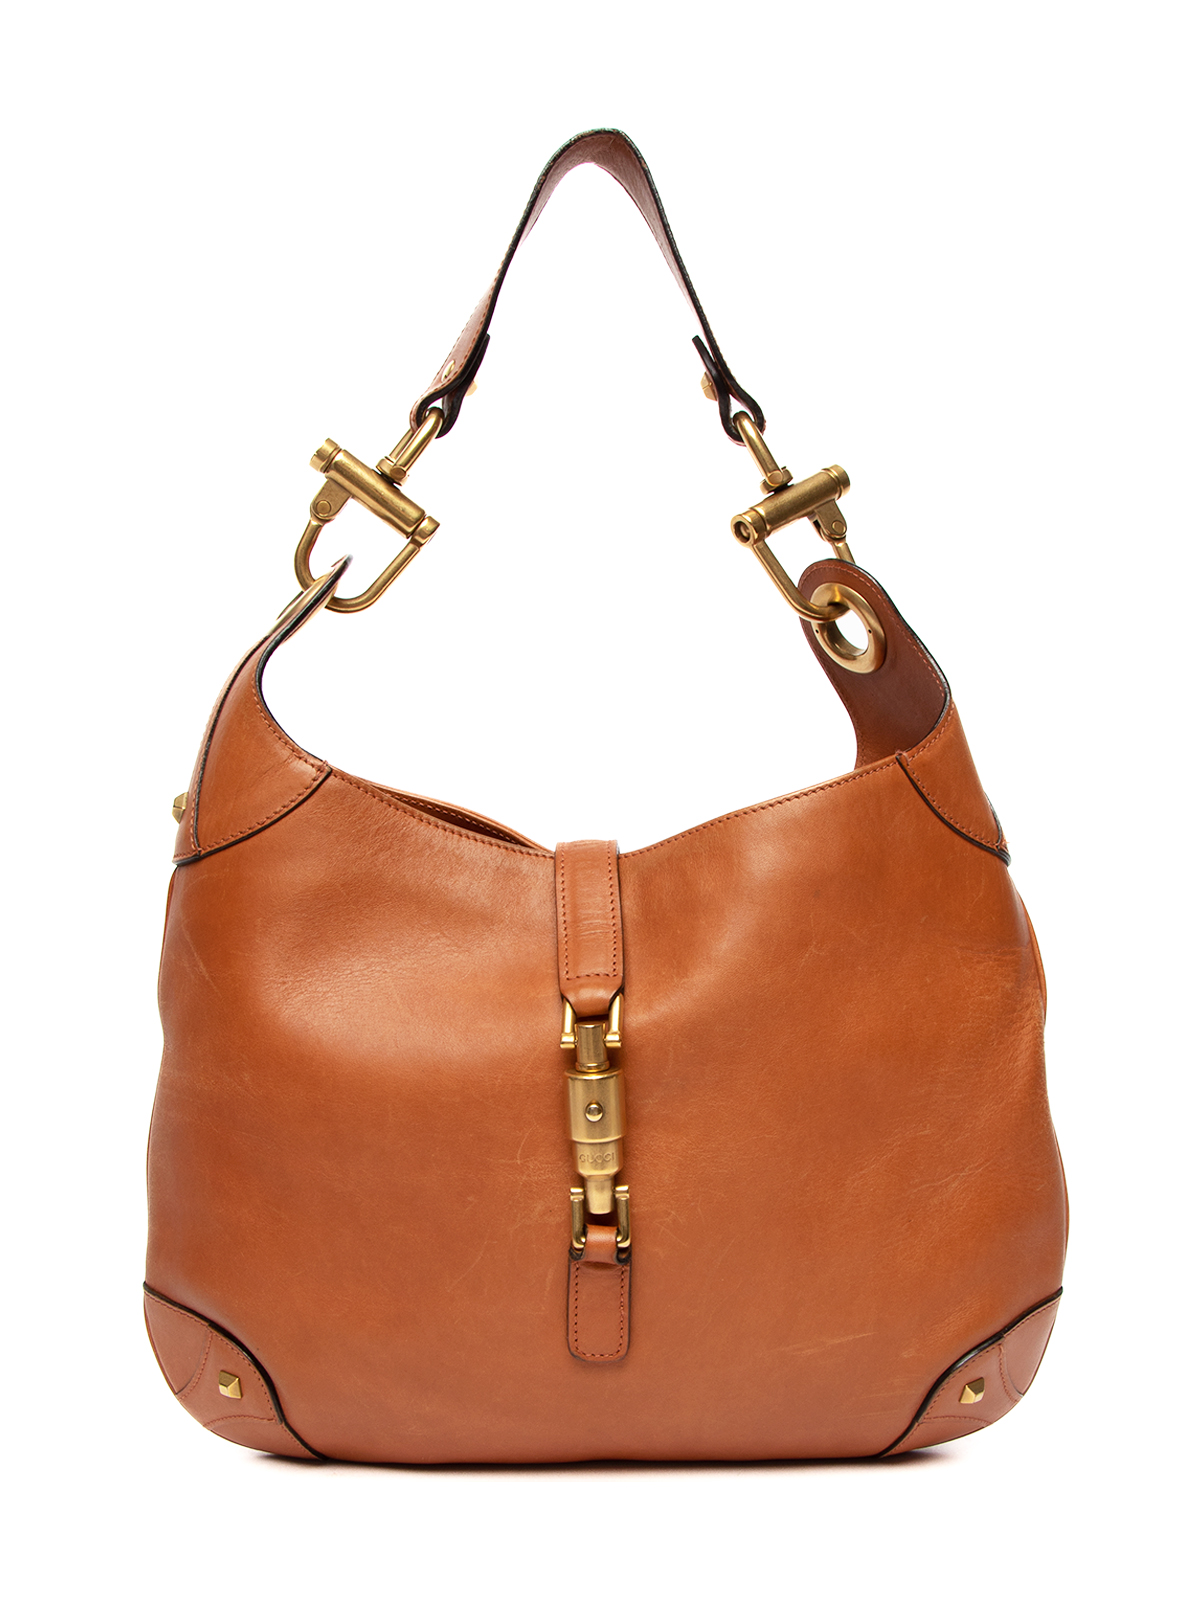 Gucci Vintage Leather Hobo Shoulder Bag